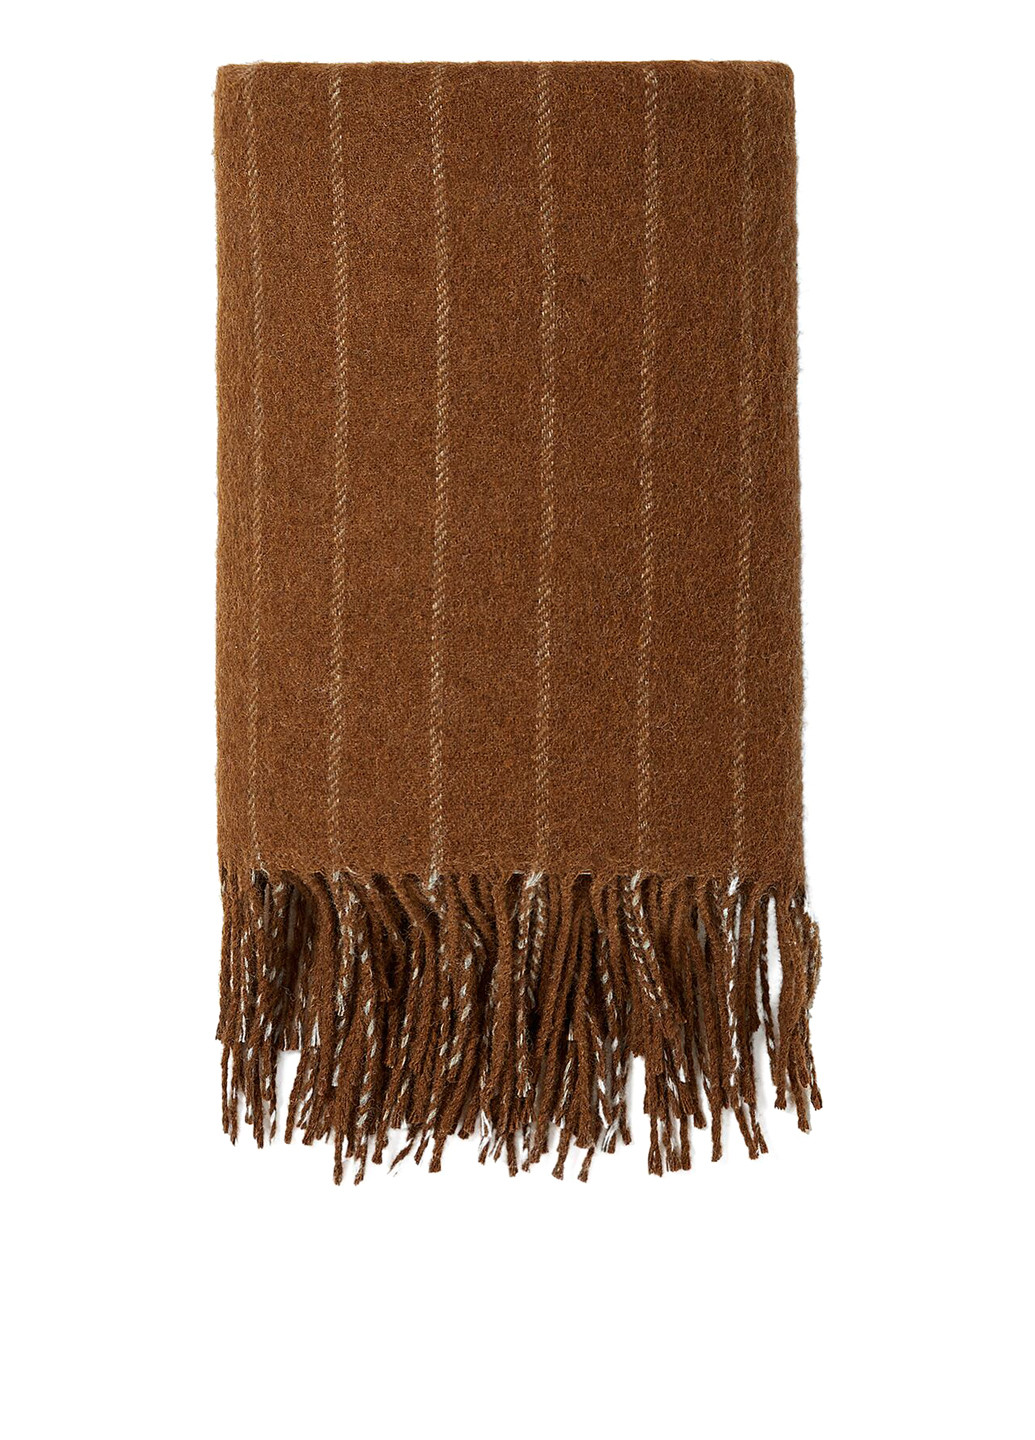 Шарф Zara полоска коричневый кэжуал полиэстер, шерсть